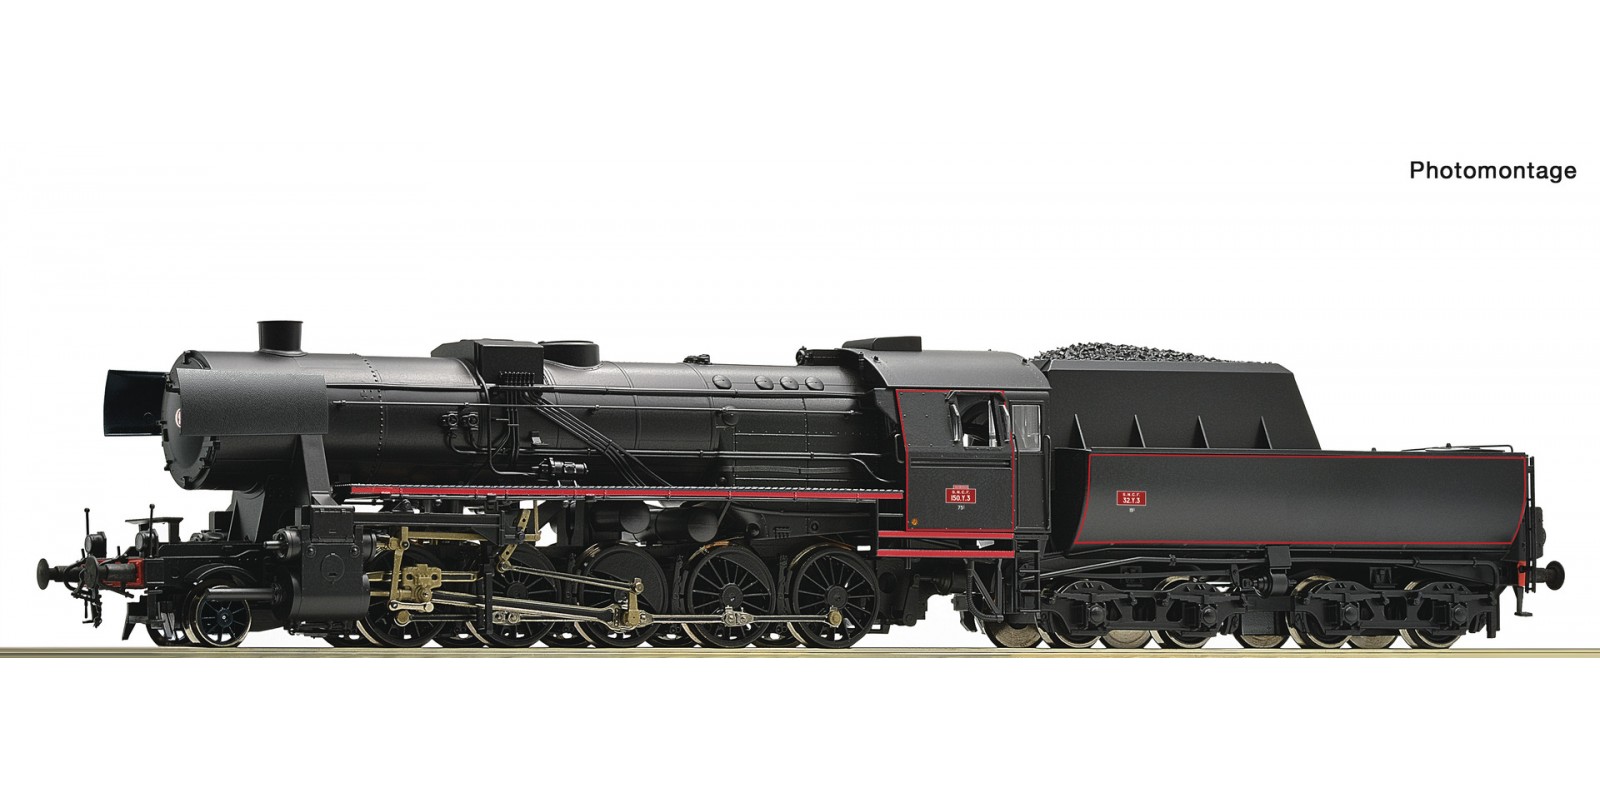 RO70280 Steam locomotive 150 Y, SNCF